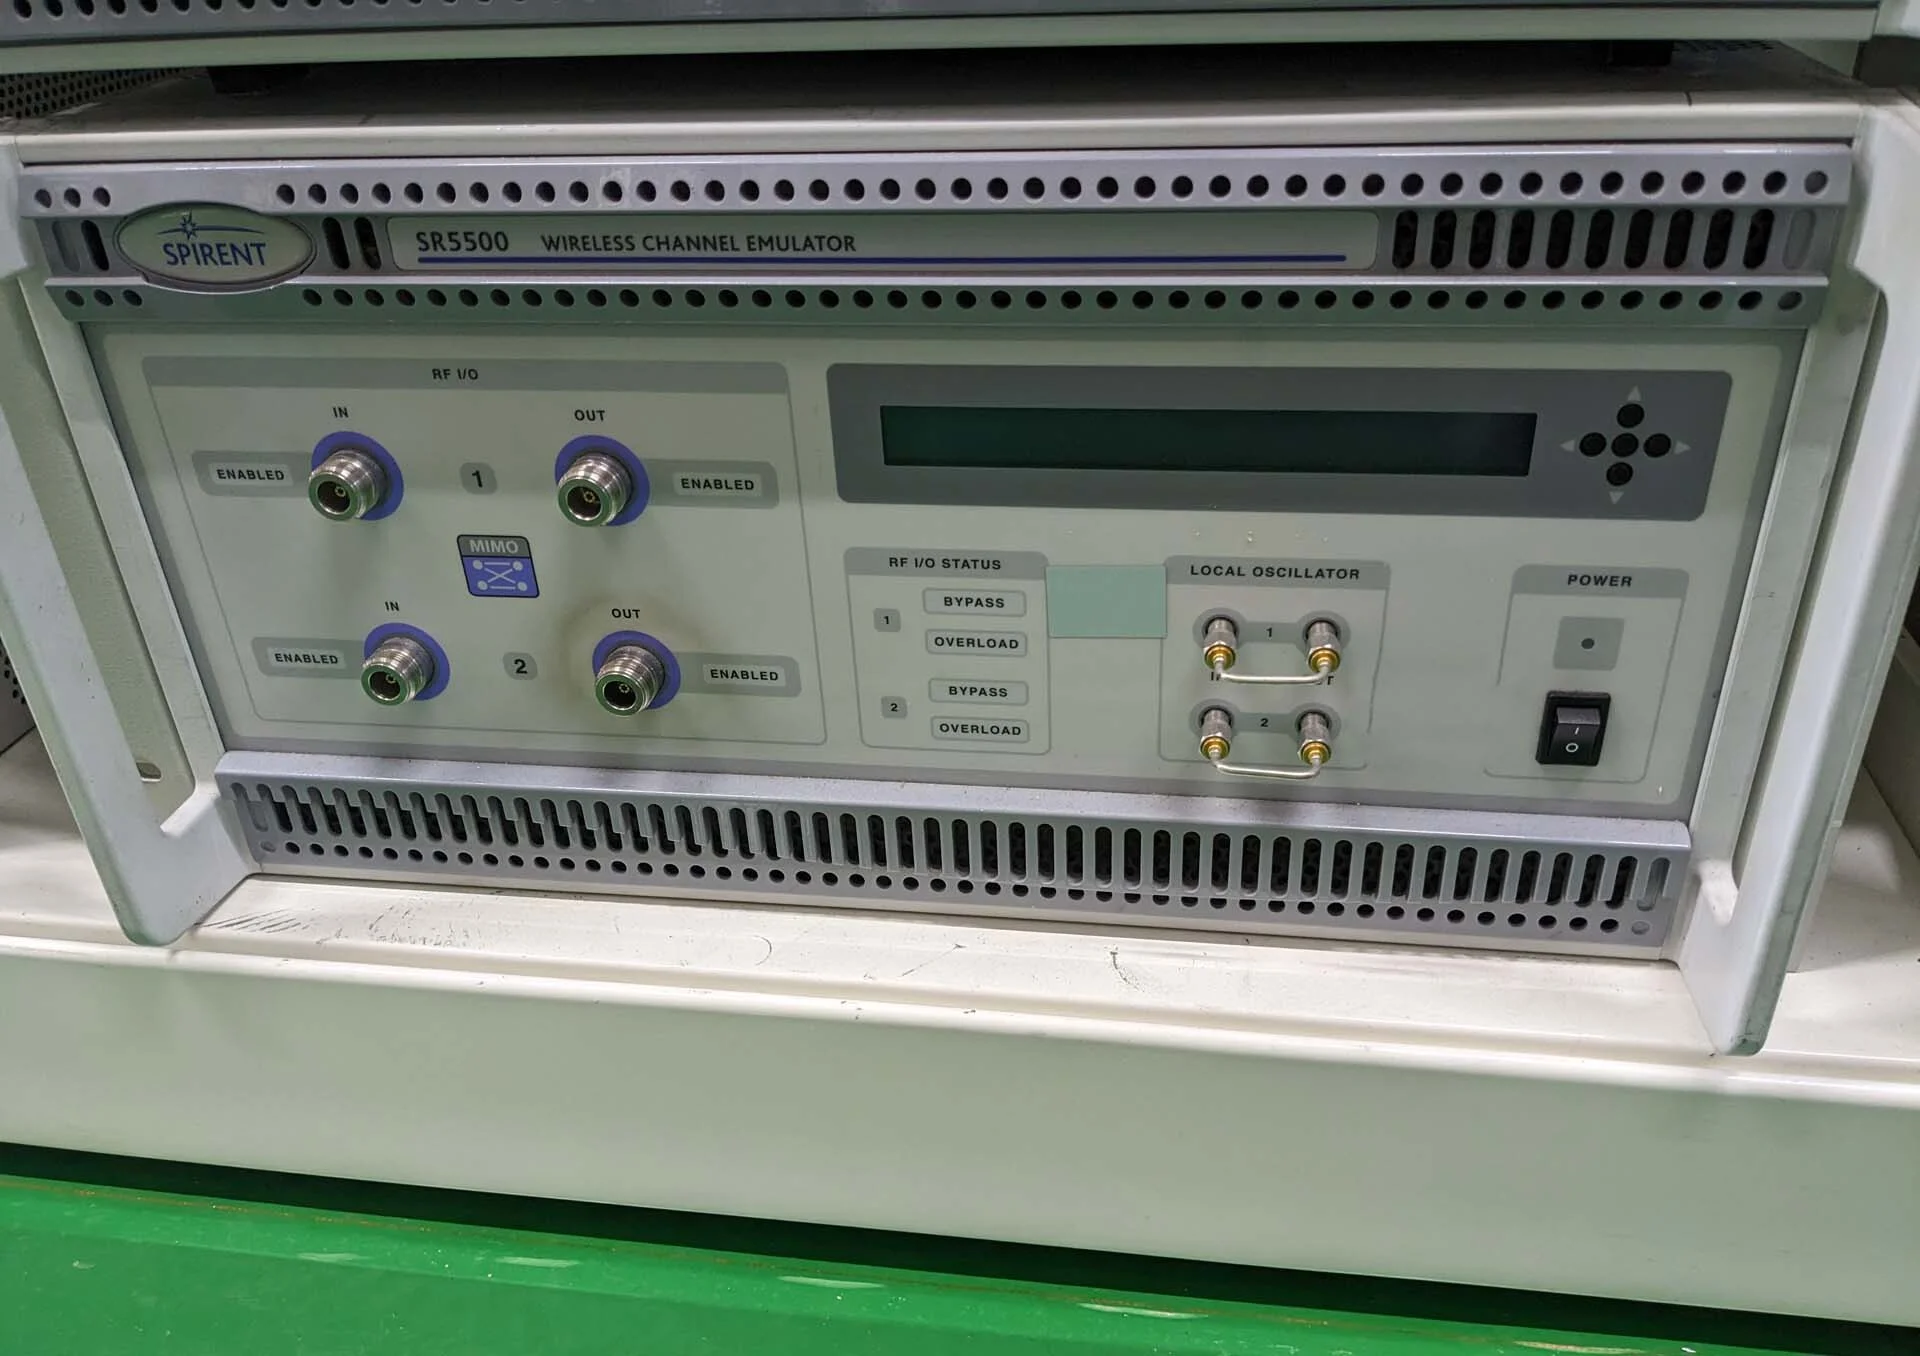 SPIRENT SR5500 電子試験装置 はセール価格 #9185613 で使用されてい